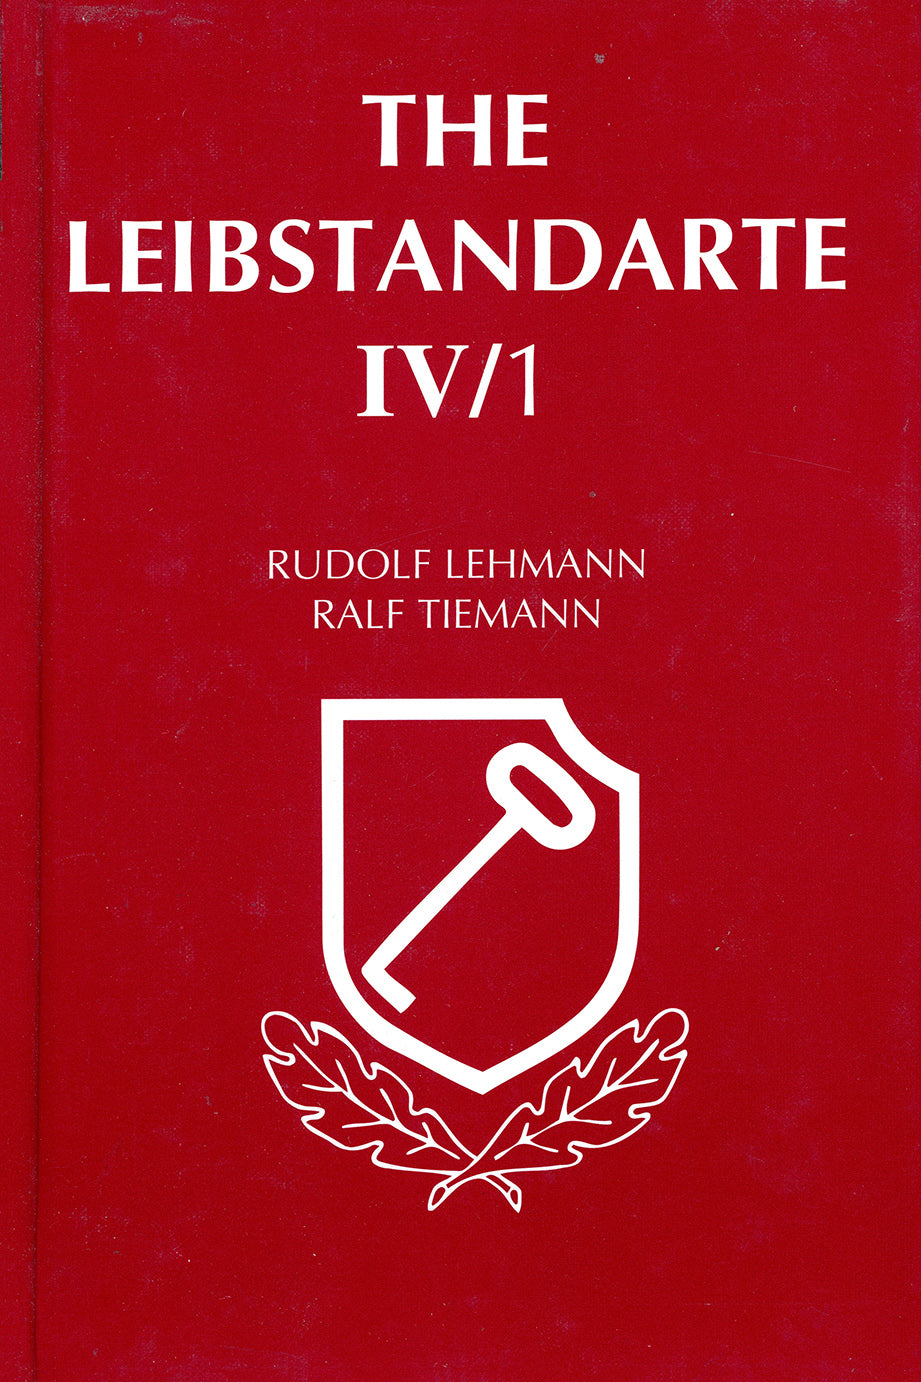 The Leibstandarte Vol. IV/1